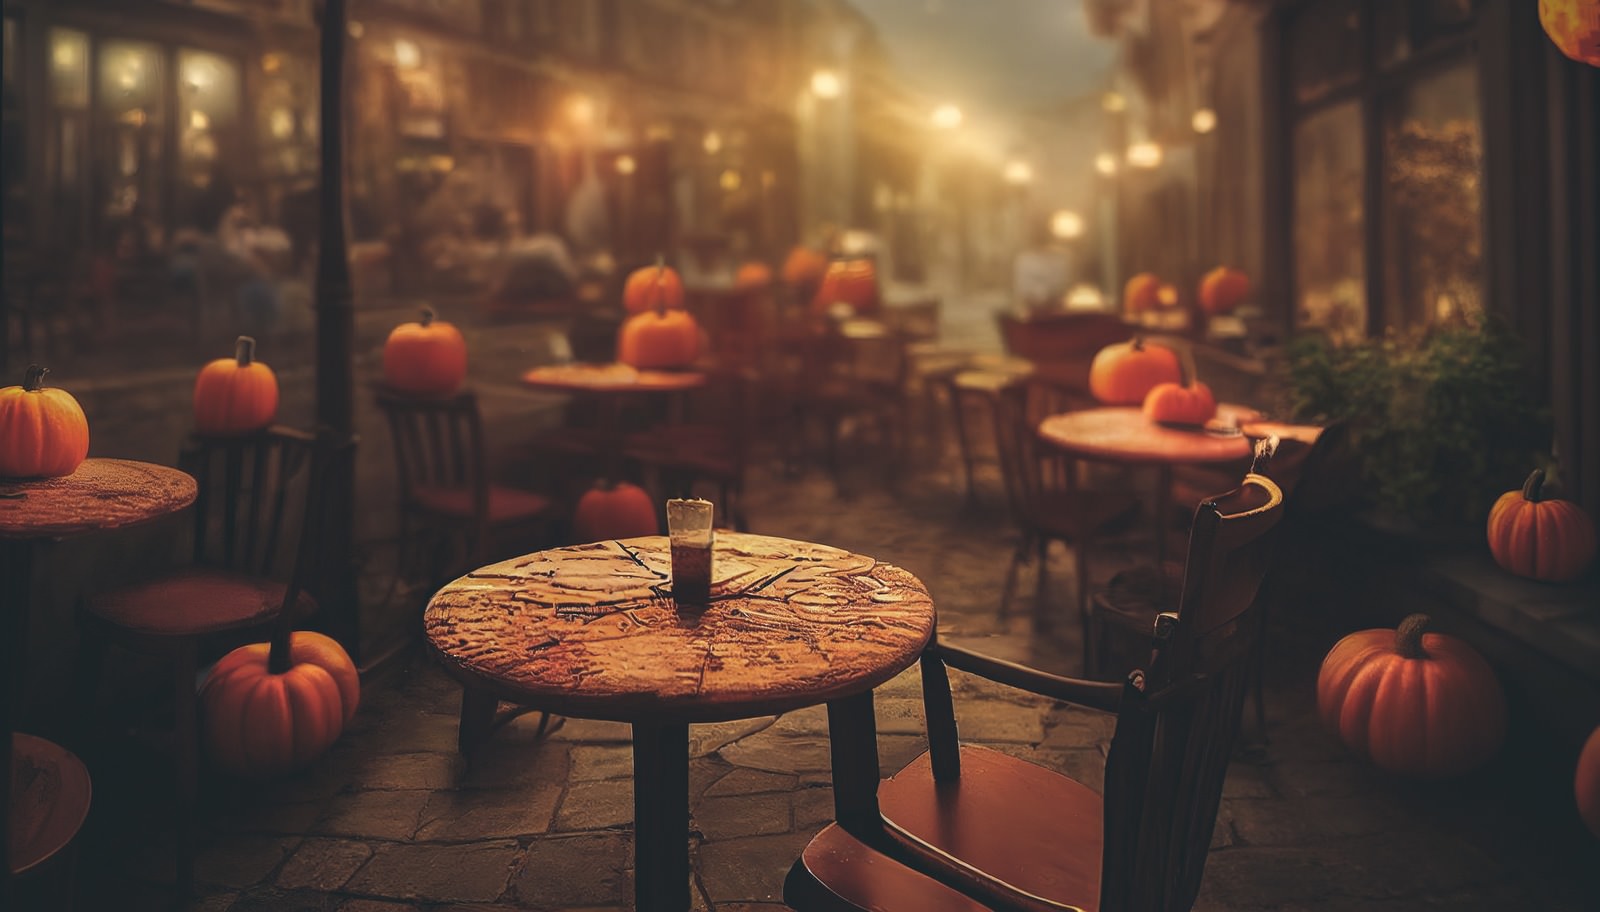 「ジャックランタンに専有されたカフェの様子 | フリー素材のぱくたそ」の写真